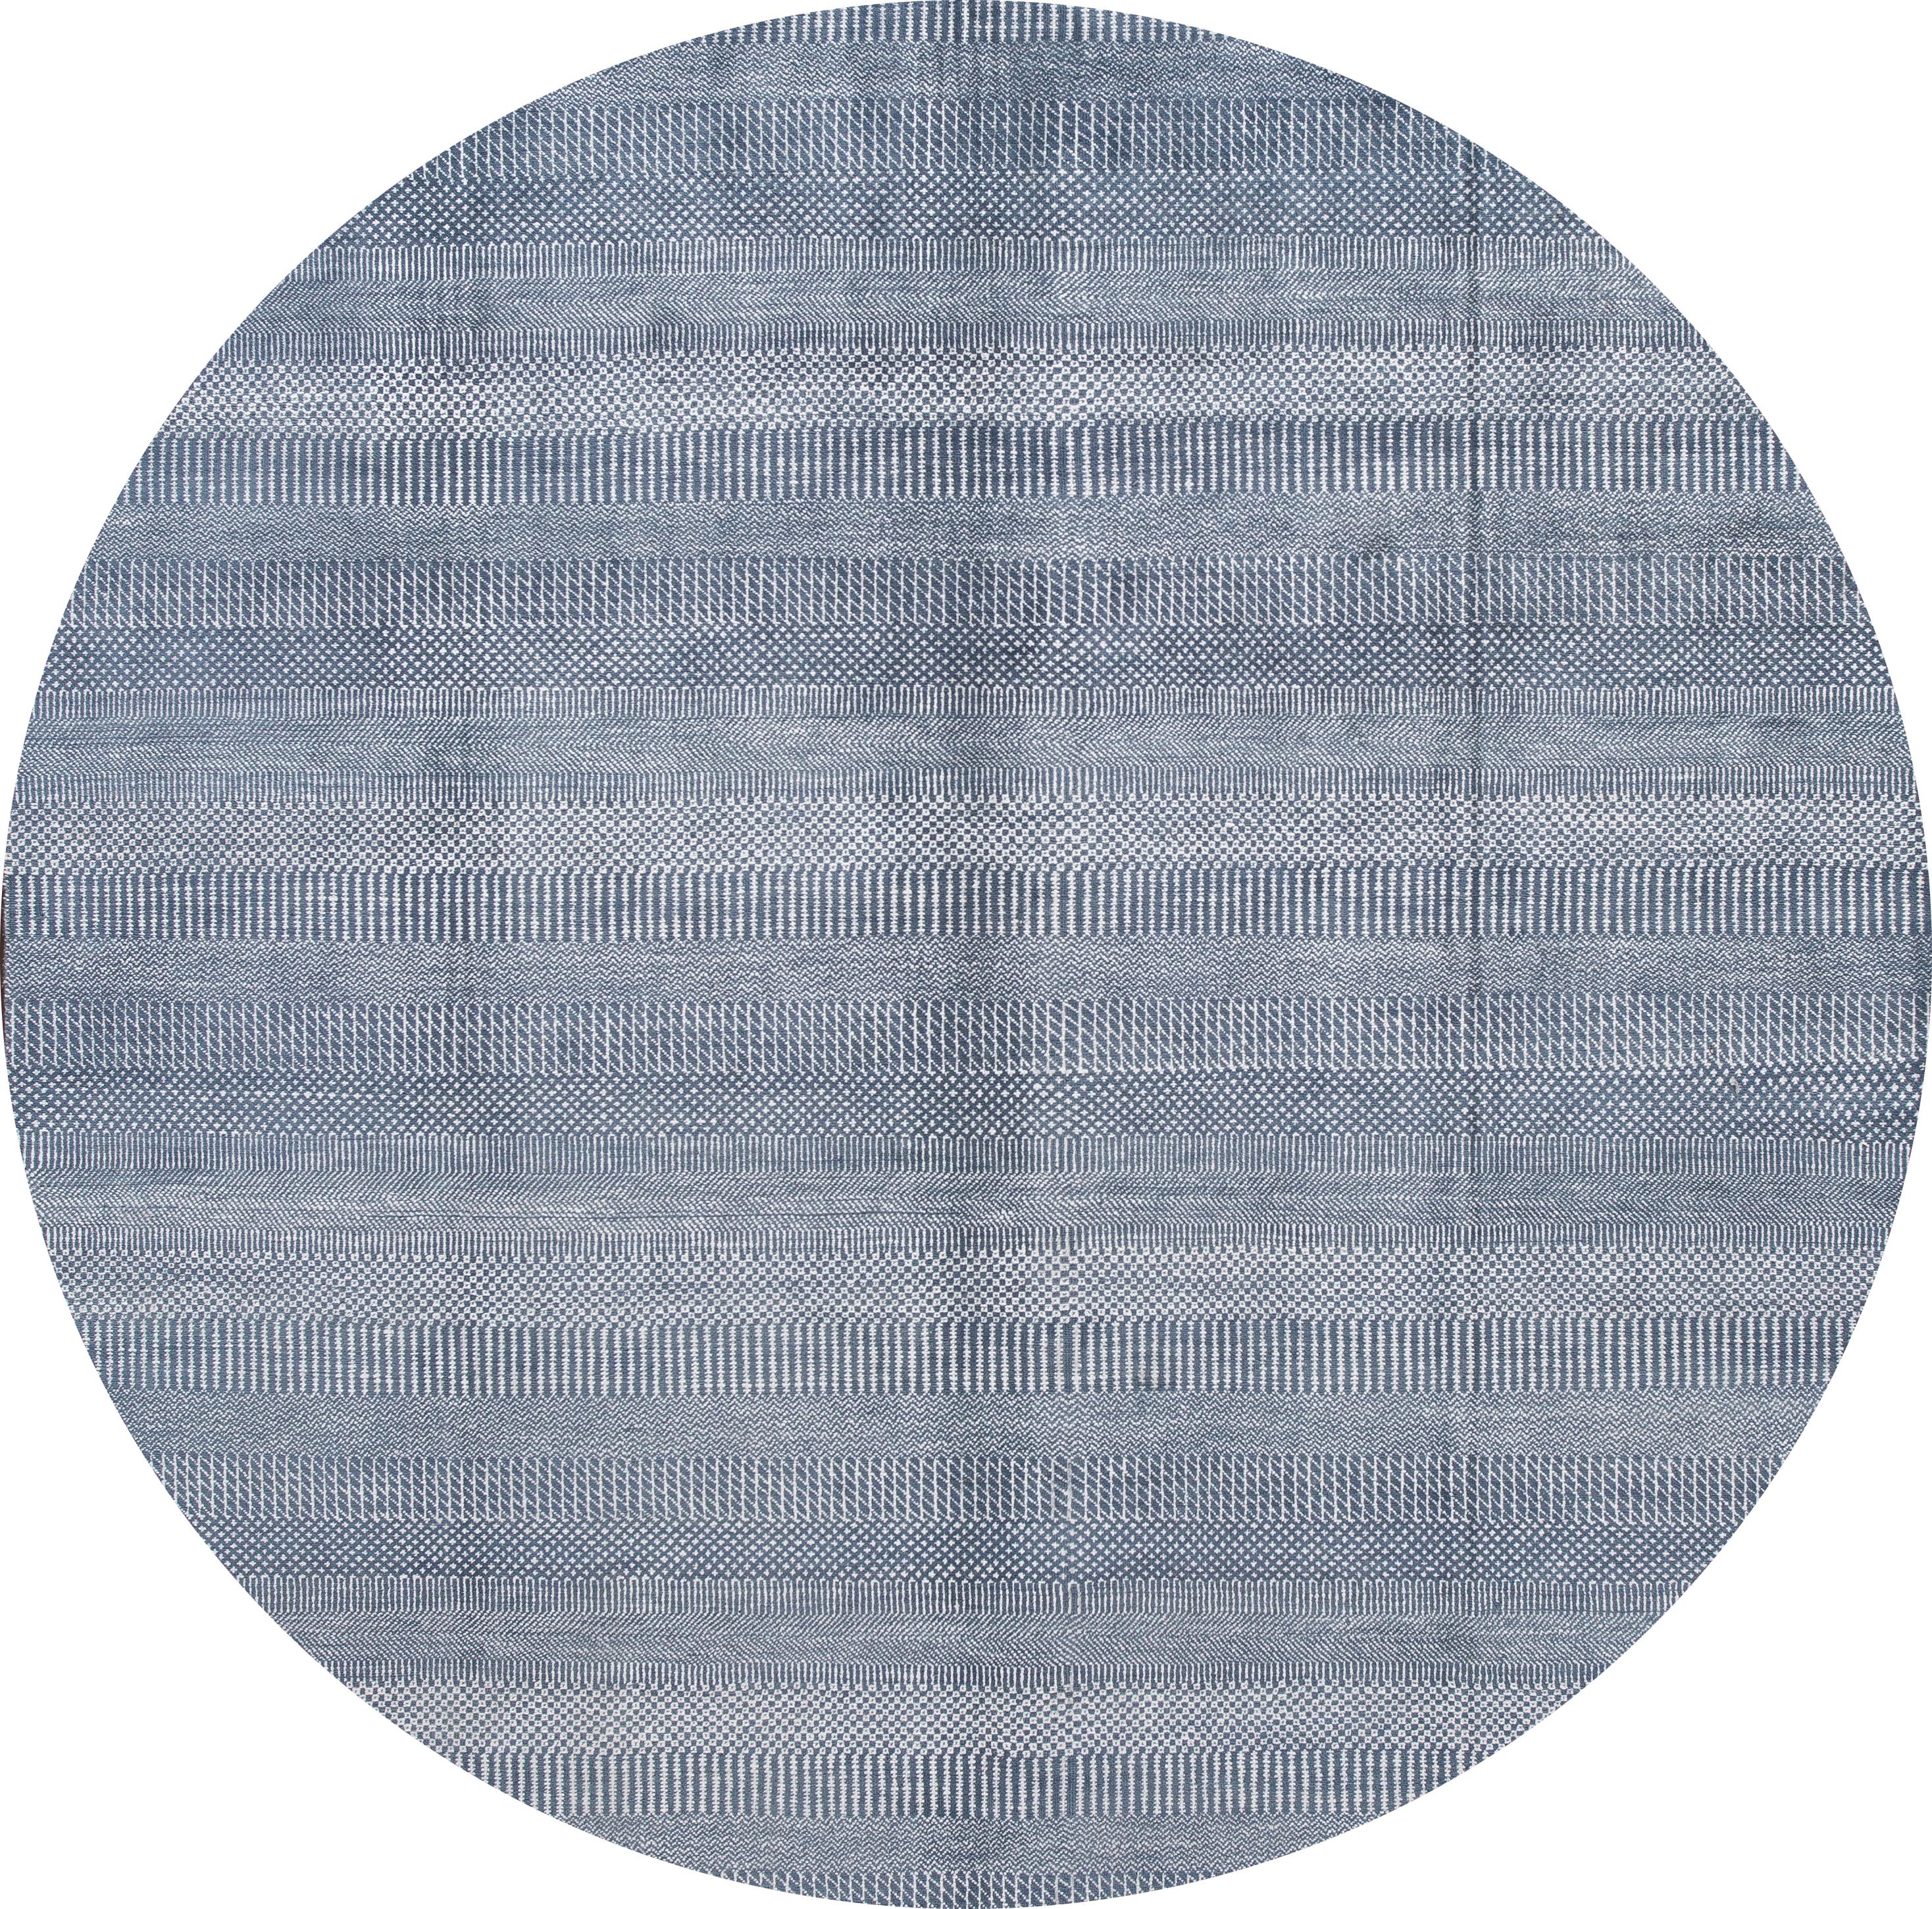 Ein schöner Savannah-Teppich des 21. Jahrhunderts mit einem blauen Feld über das gesamte Design.
Dieser Teppich misst: 8' x 10'.